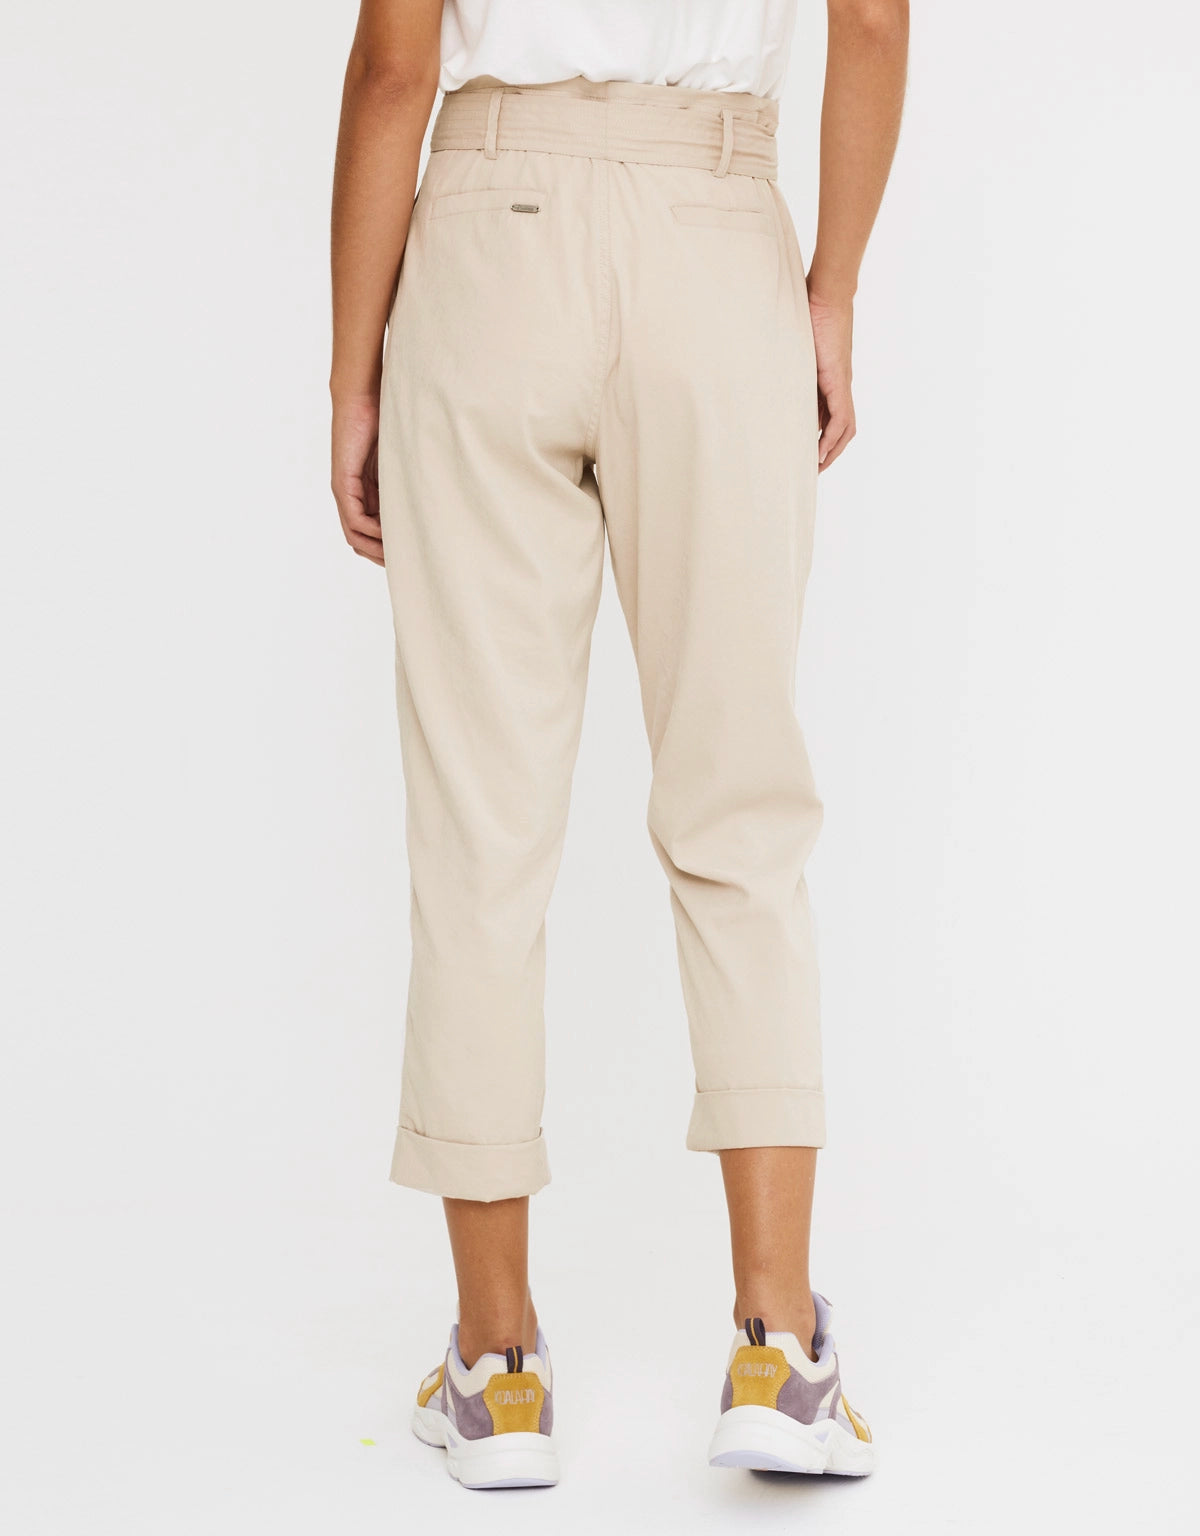 Pantalon taille haute femme tendance VAÏANA couleur beige